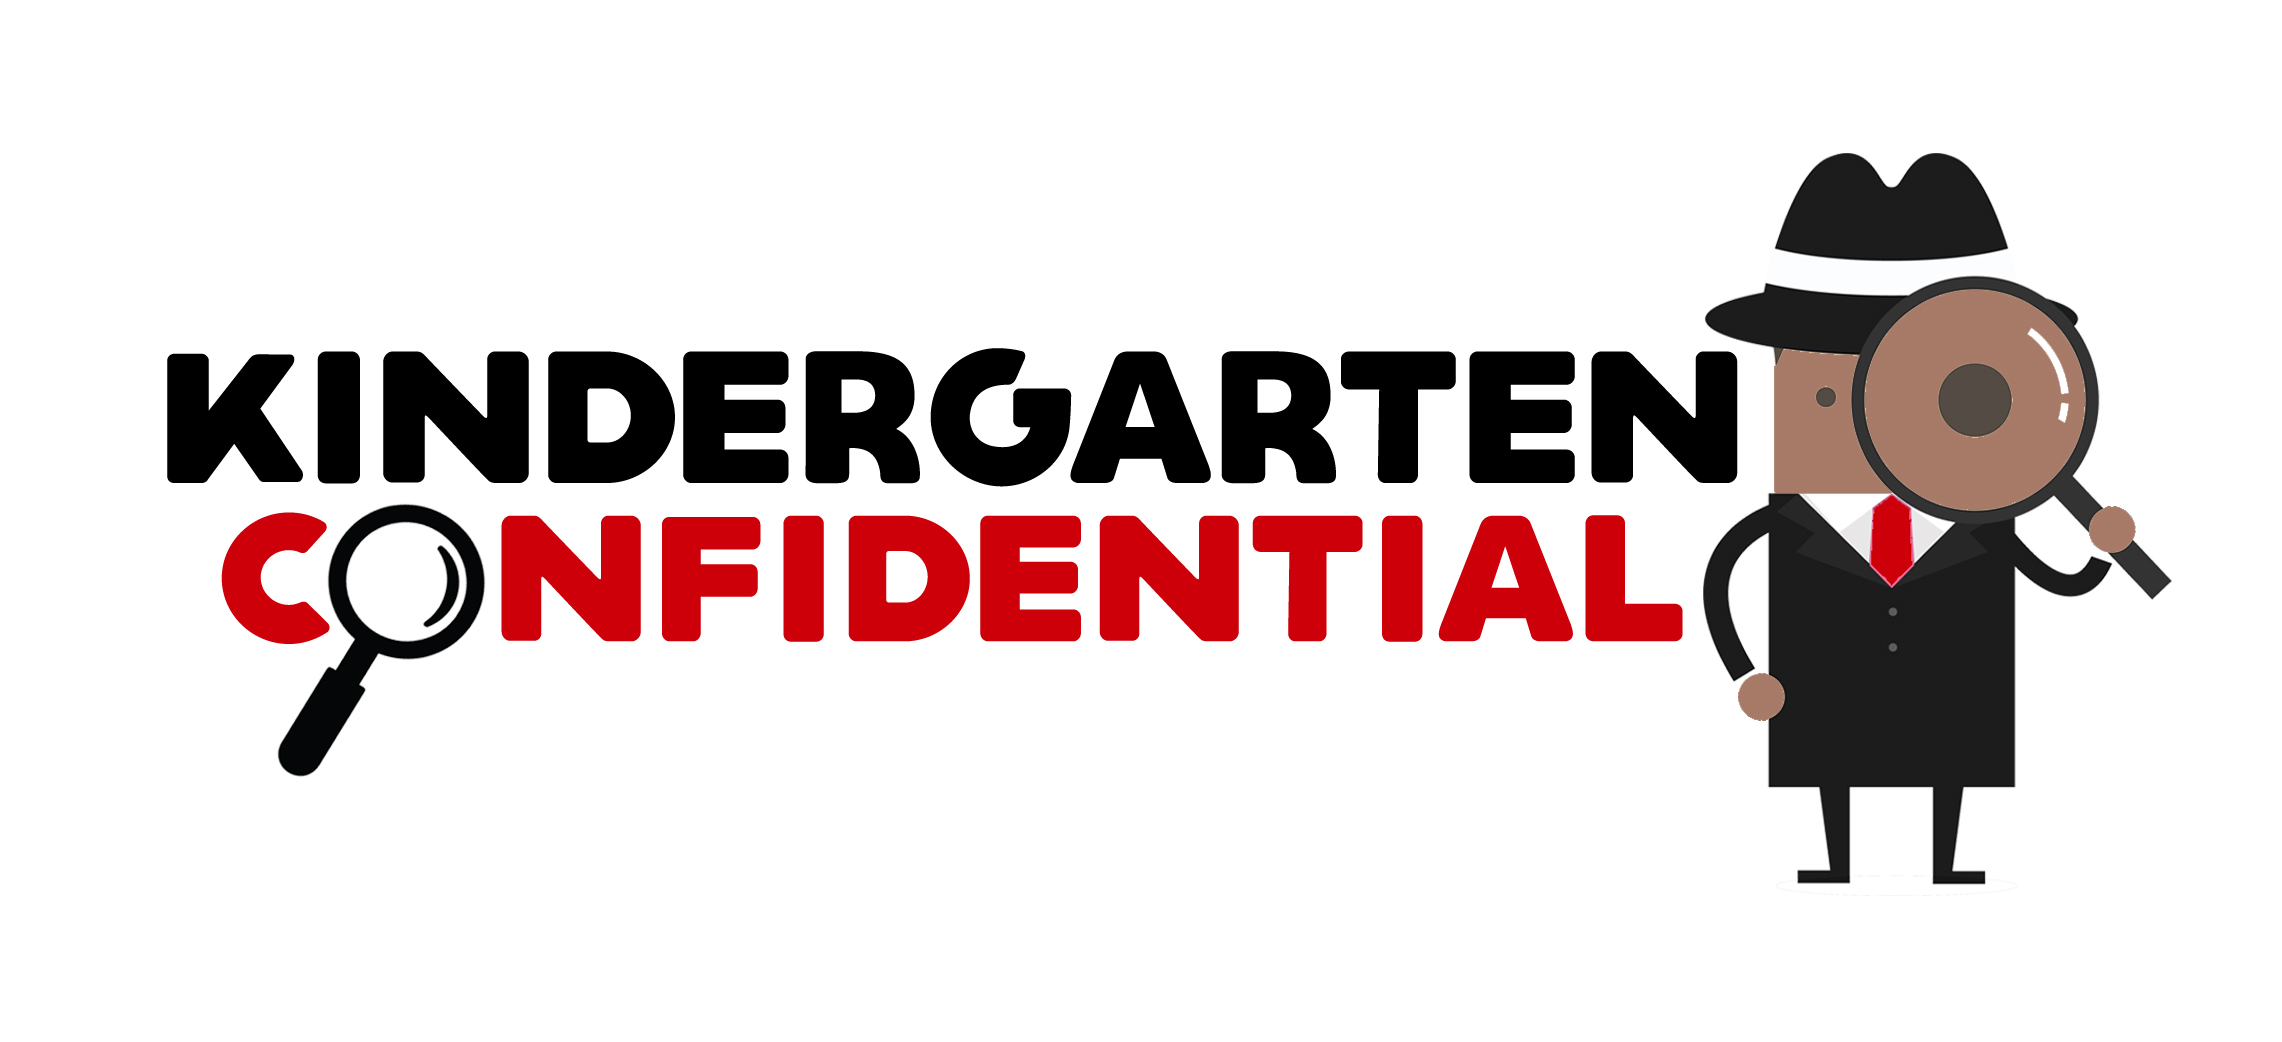 Kindergarten Confidential 2020